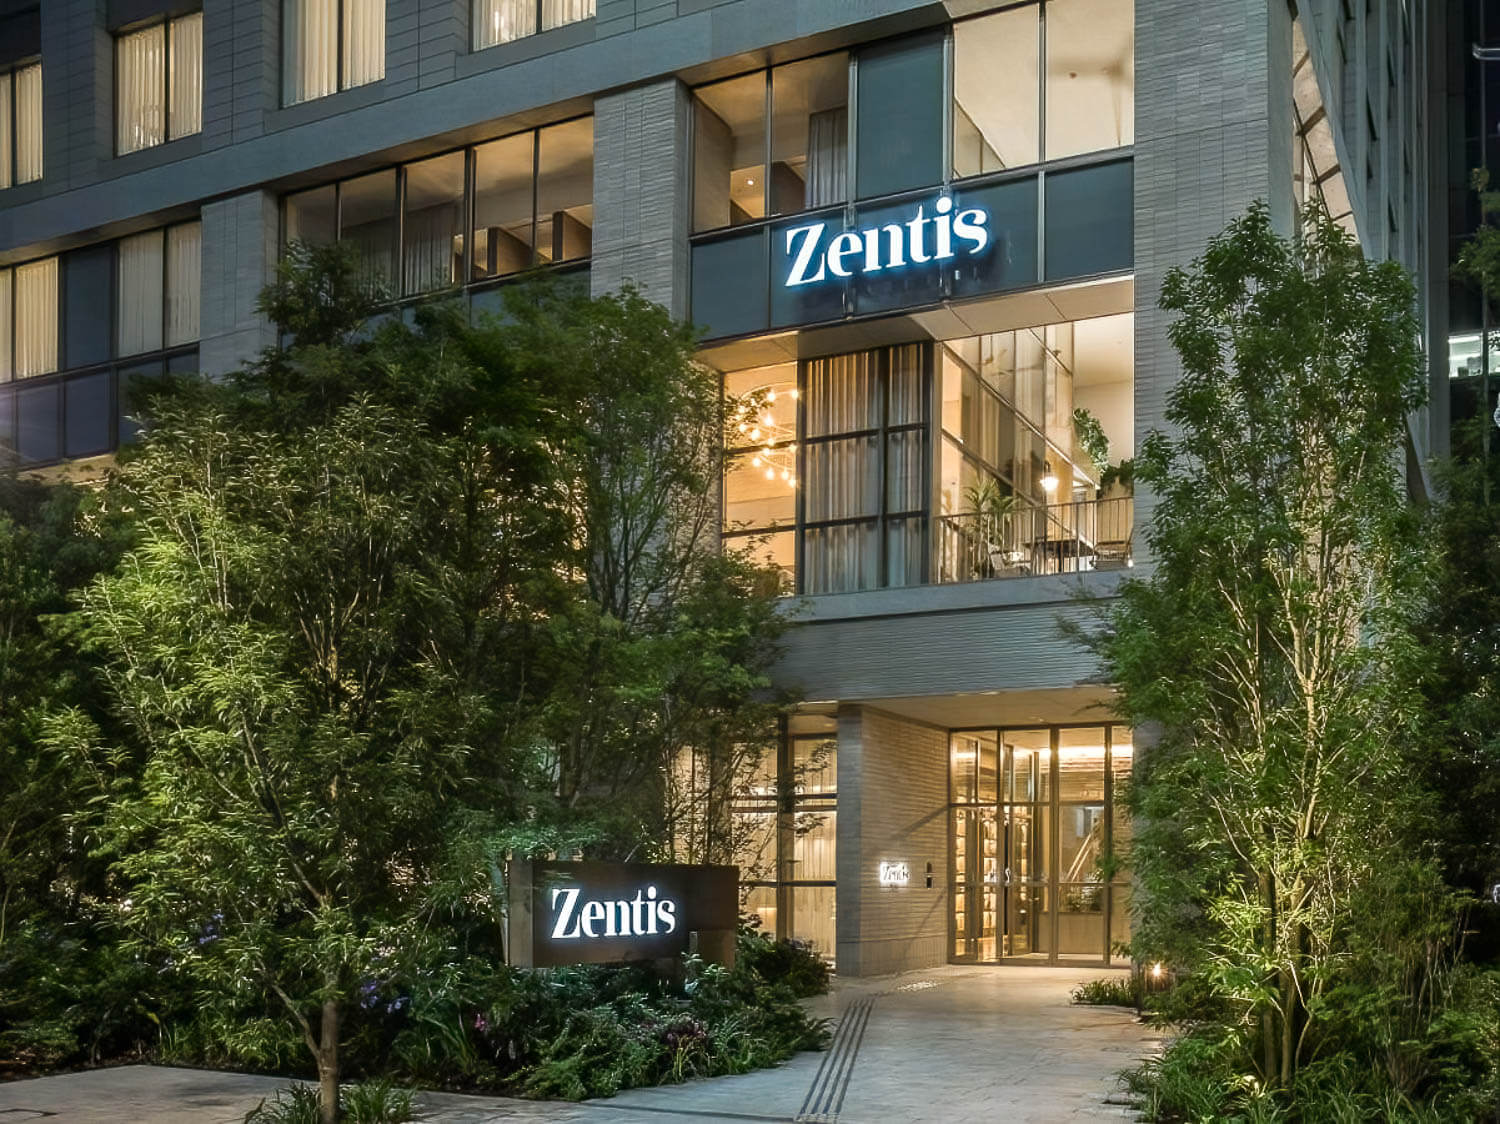 Zentis Hotel in Osaka, Japan